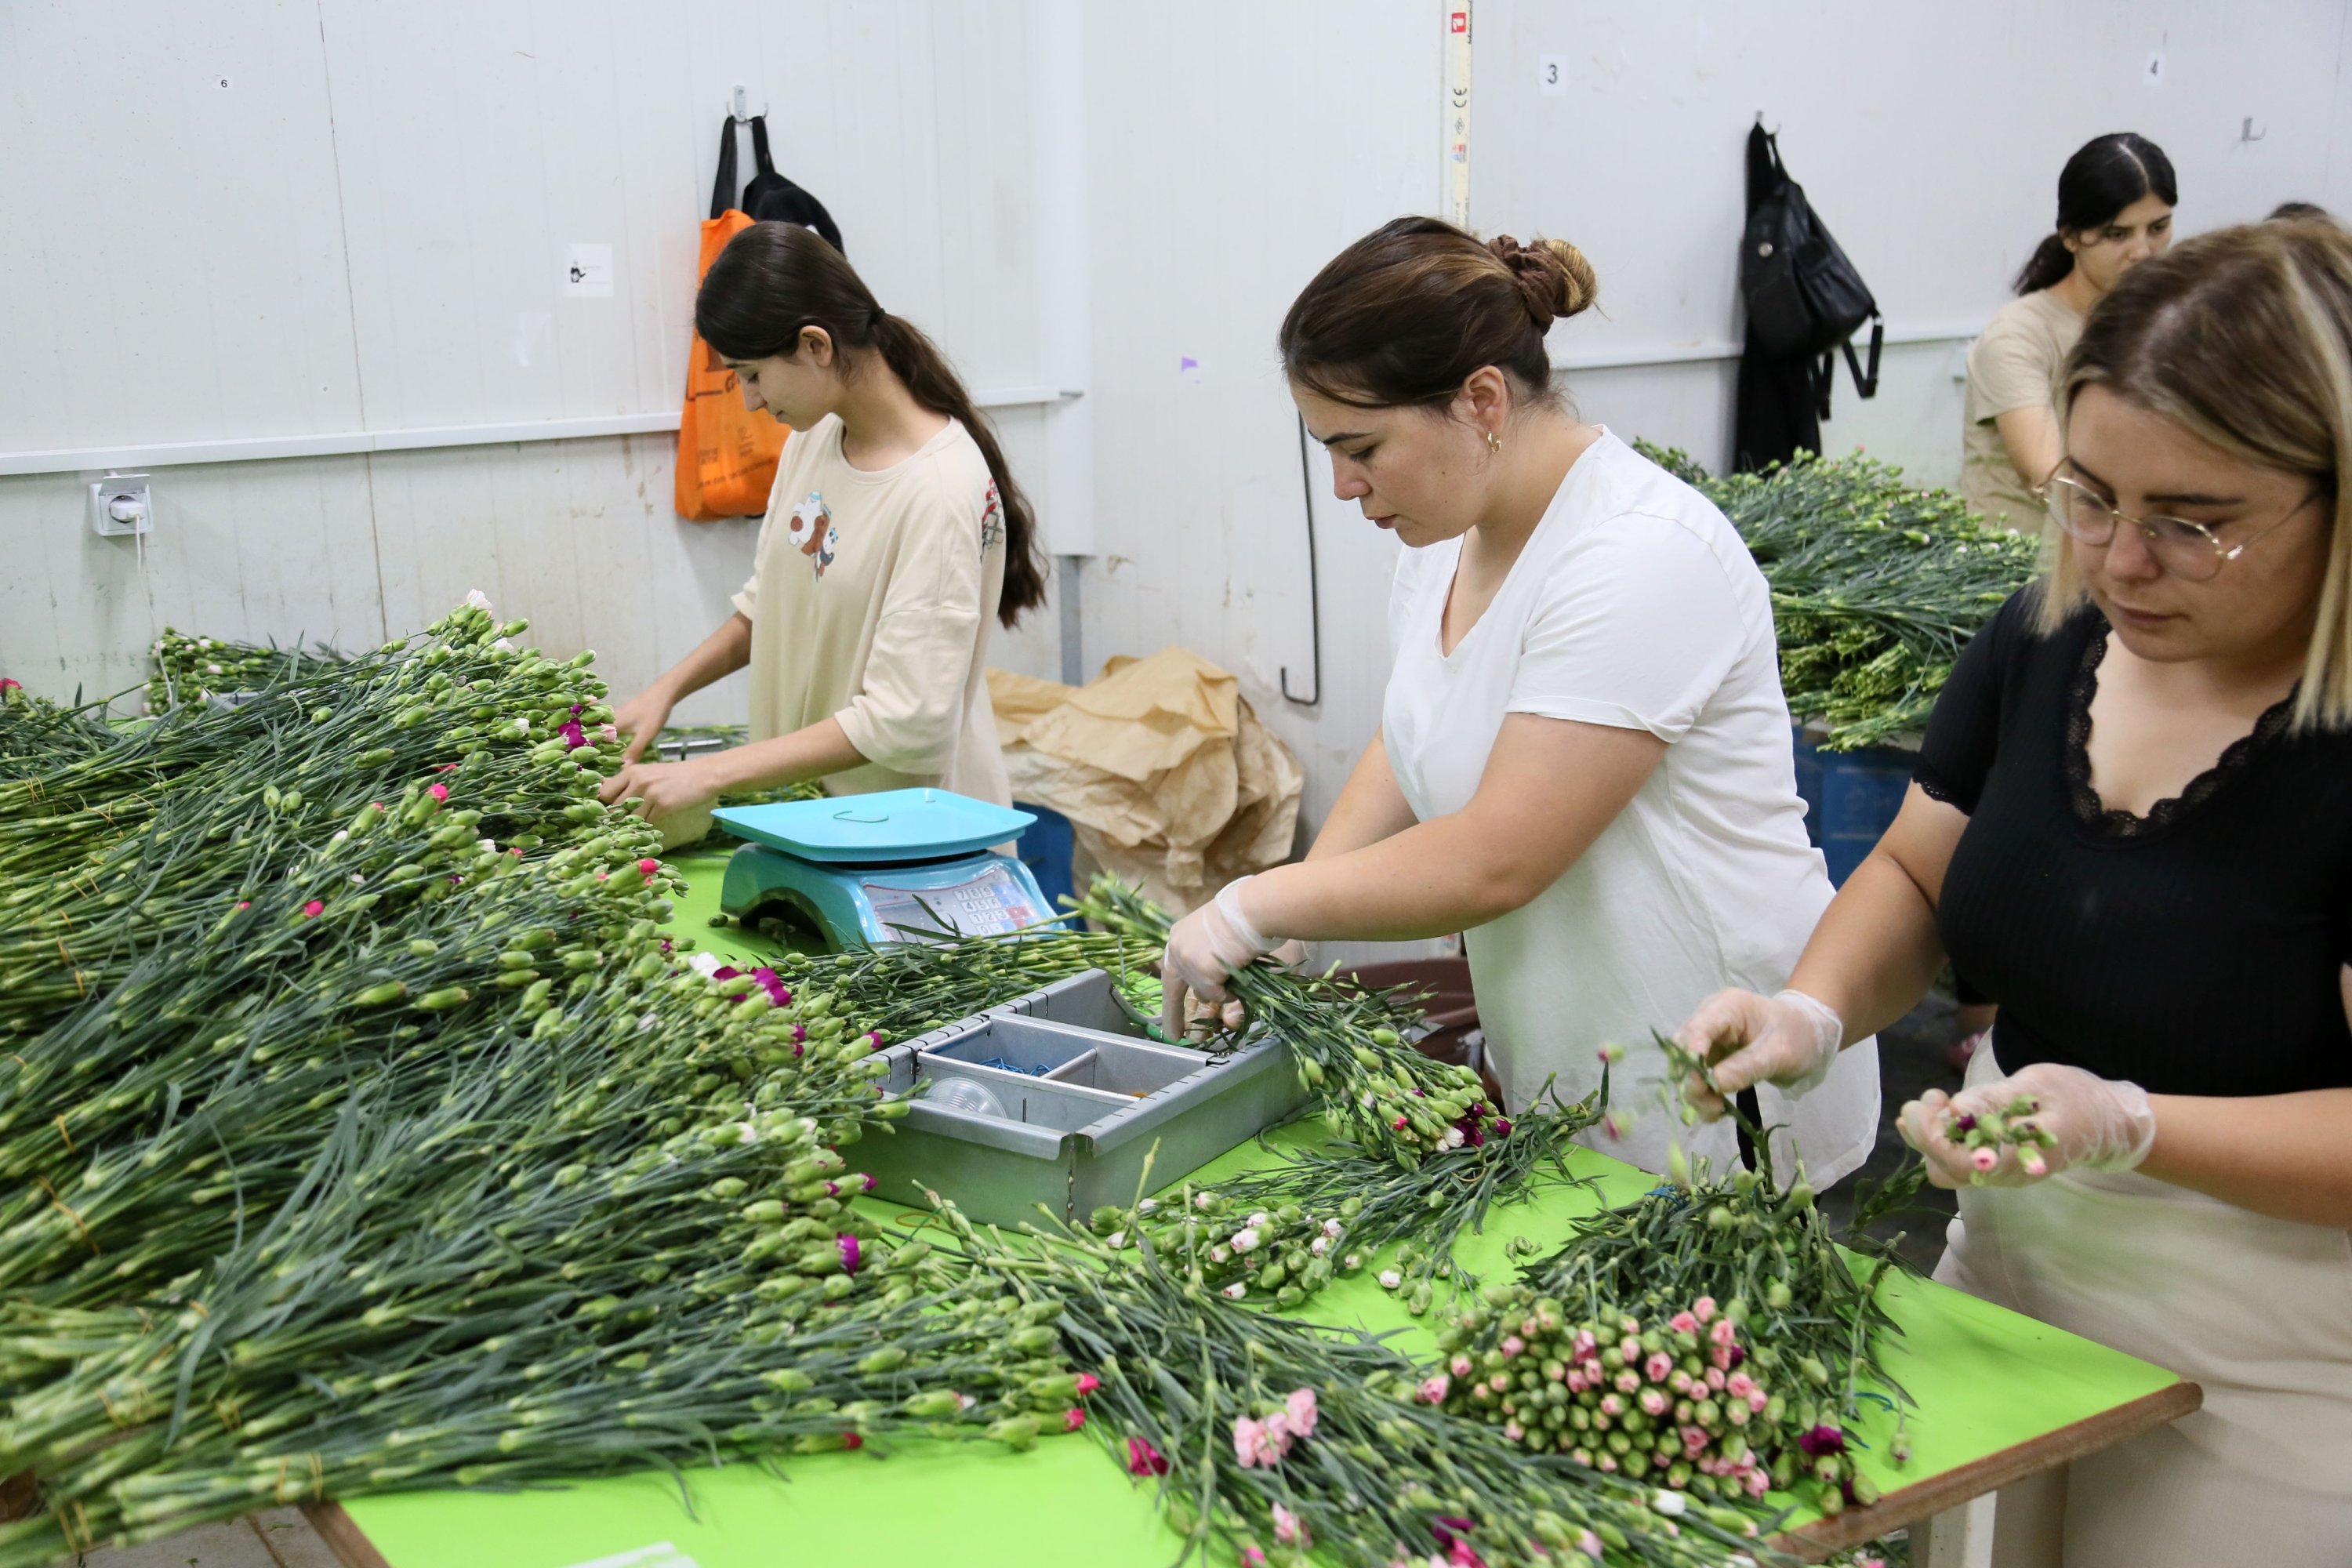 Para pekerja terlihat menyiapkan anyelir untuk pengiriman di sebuah perusahaan di Antalya, Türkiye selatan, 10 September 2022. (DHA Photo)